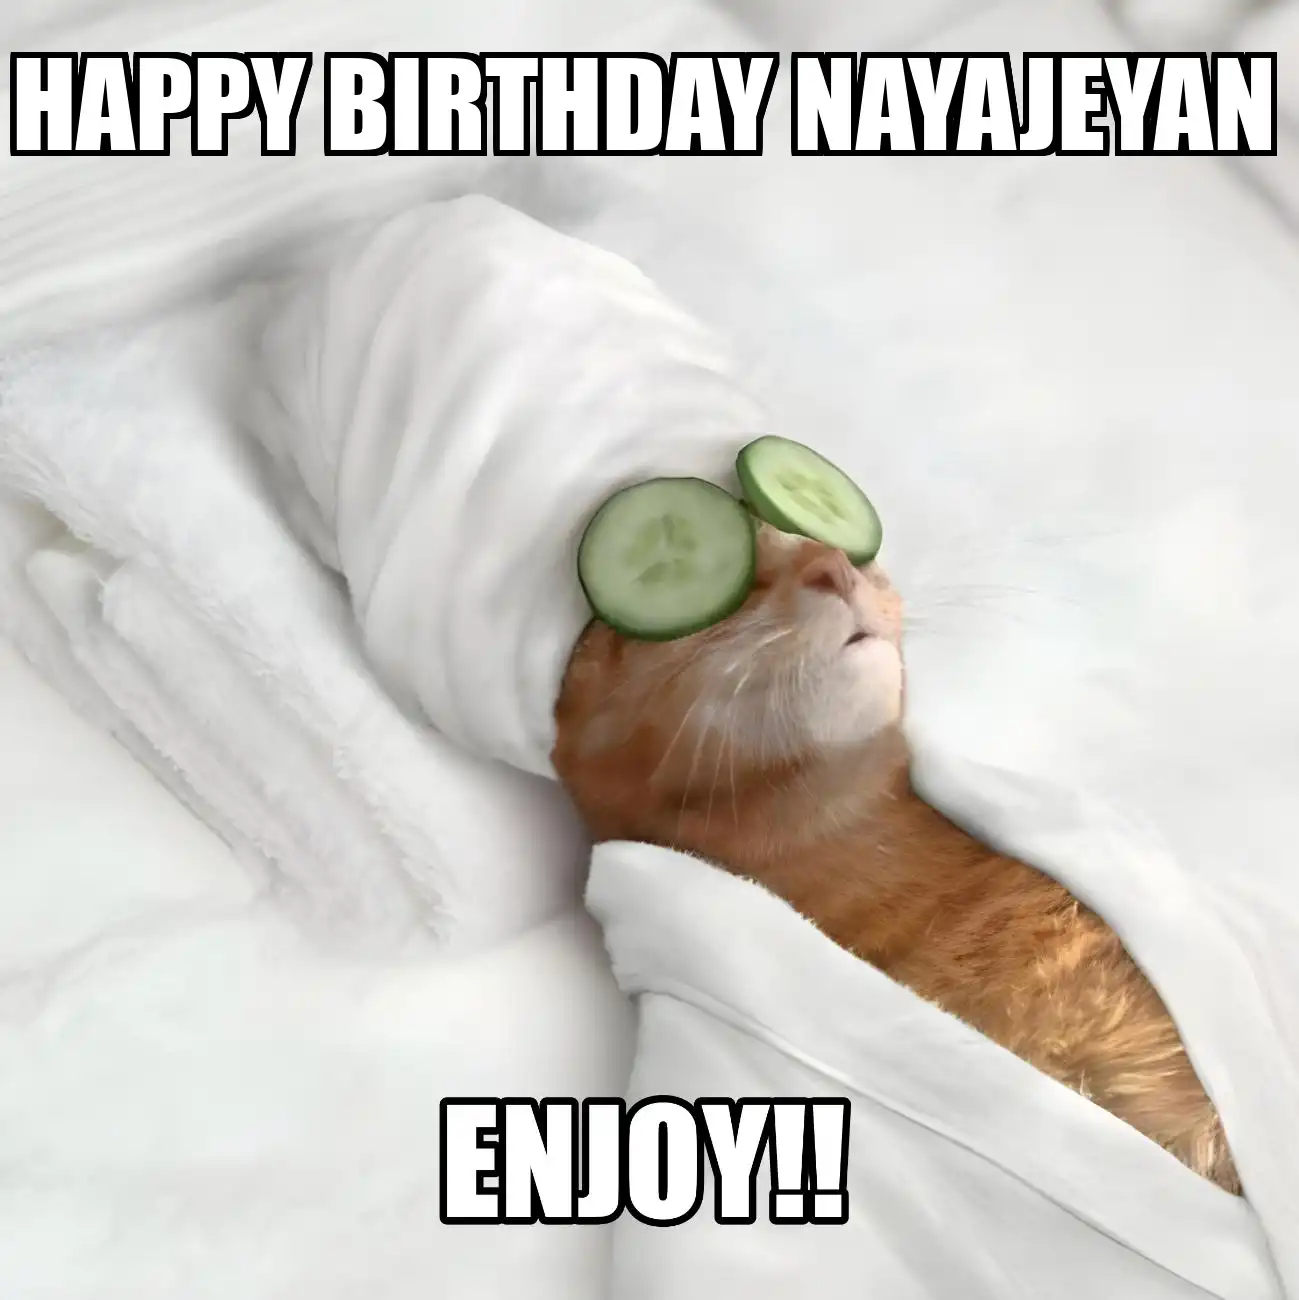 Happy Birthday Nayajeyan Enjoy Cat Meme